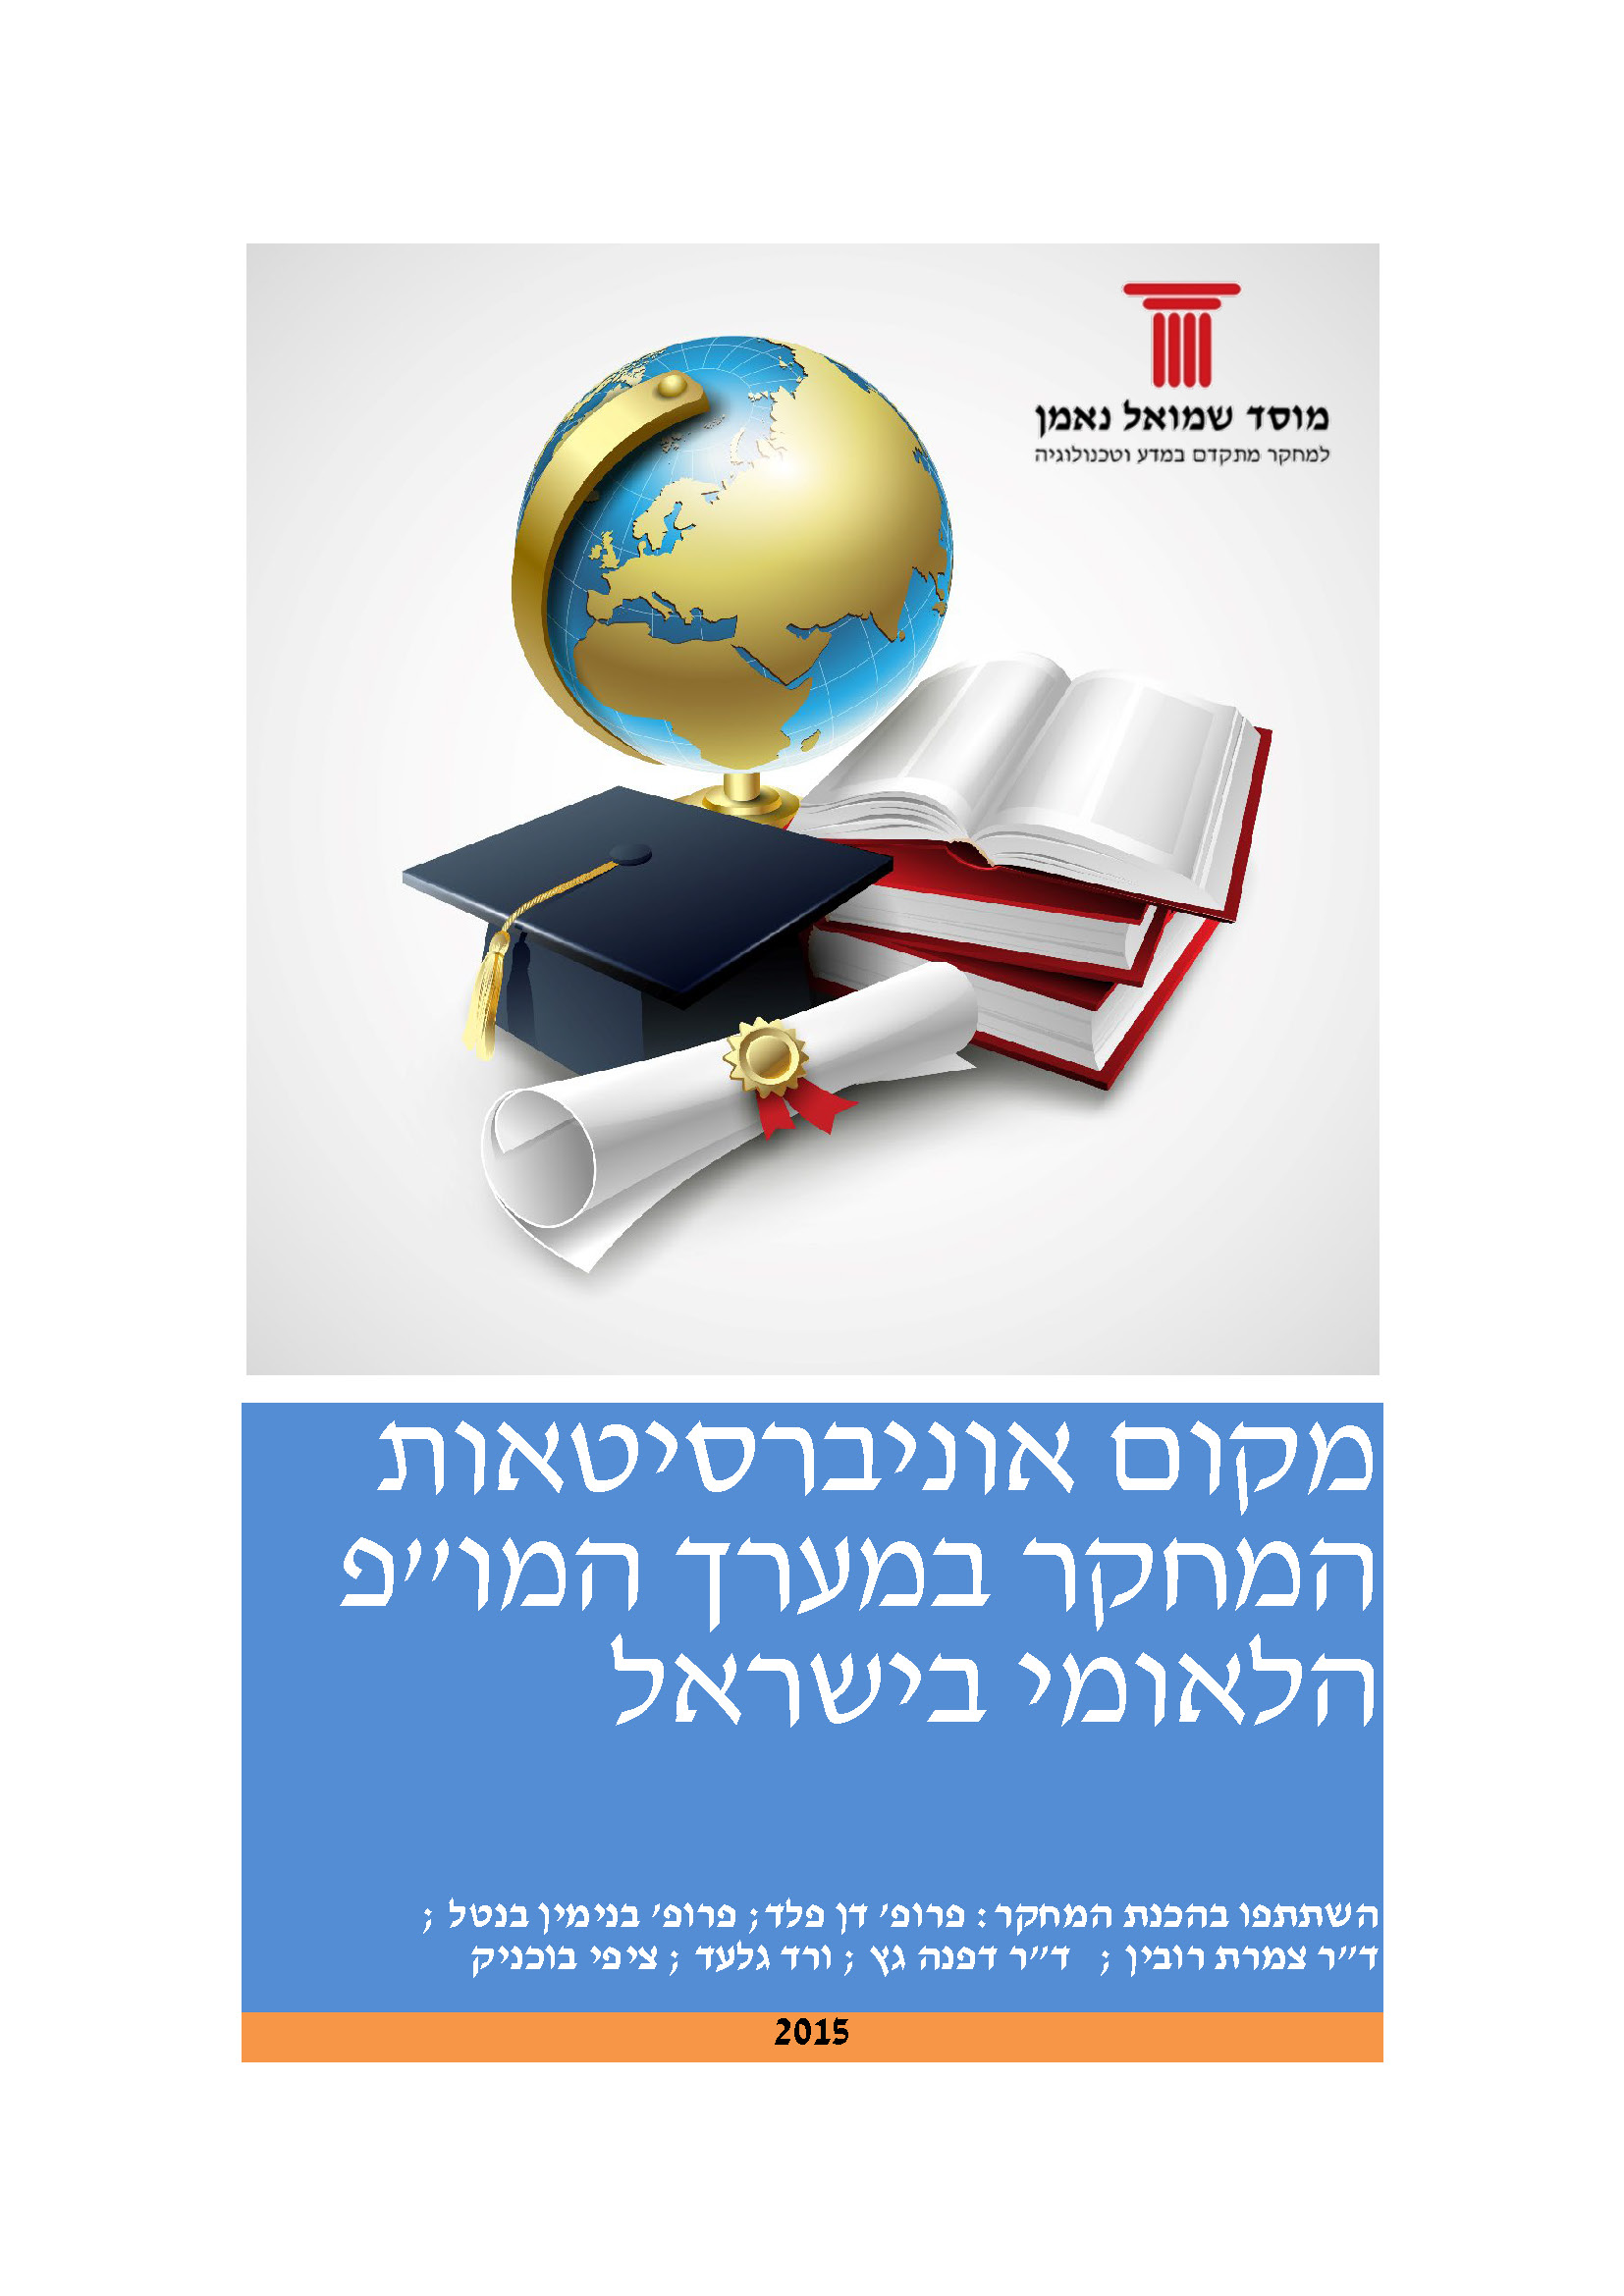 מקום אוניברסיטאות המחקר במערך המו"פ הלאומי בישראל